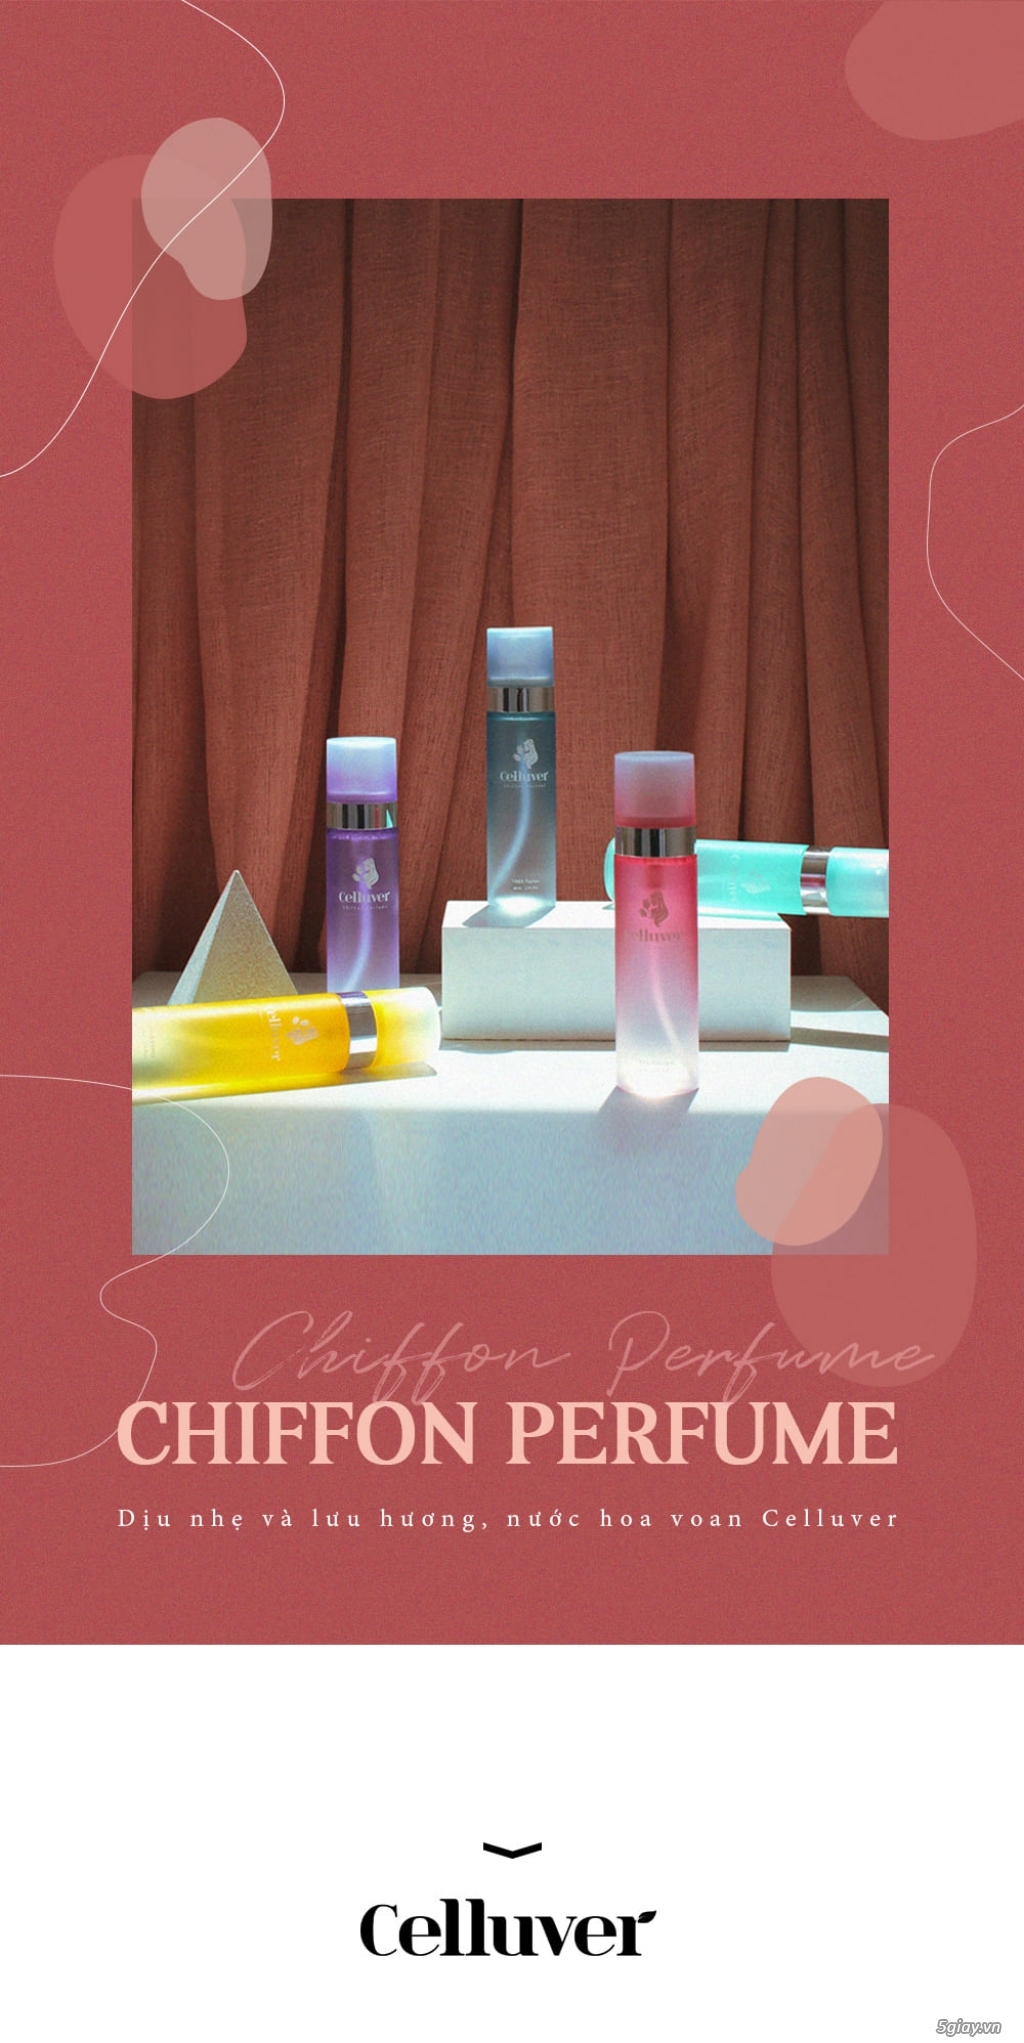 CELLUVER Nước Hoa Voan Chiffon Perfume - 1959 Aurora 80ml - 12